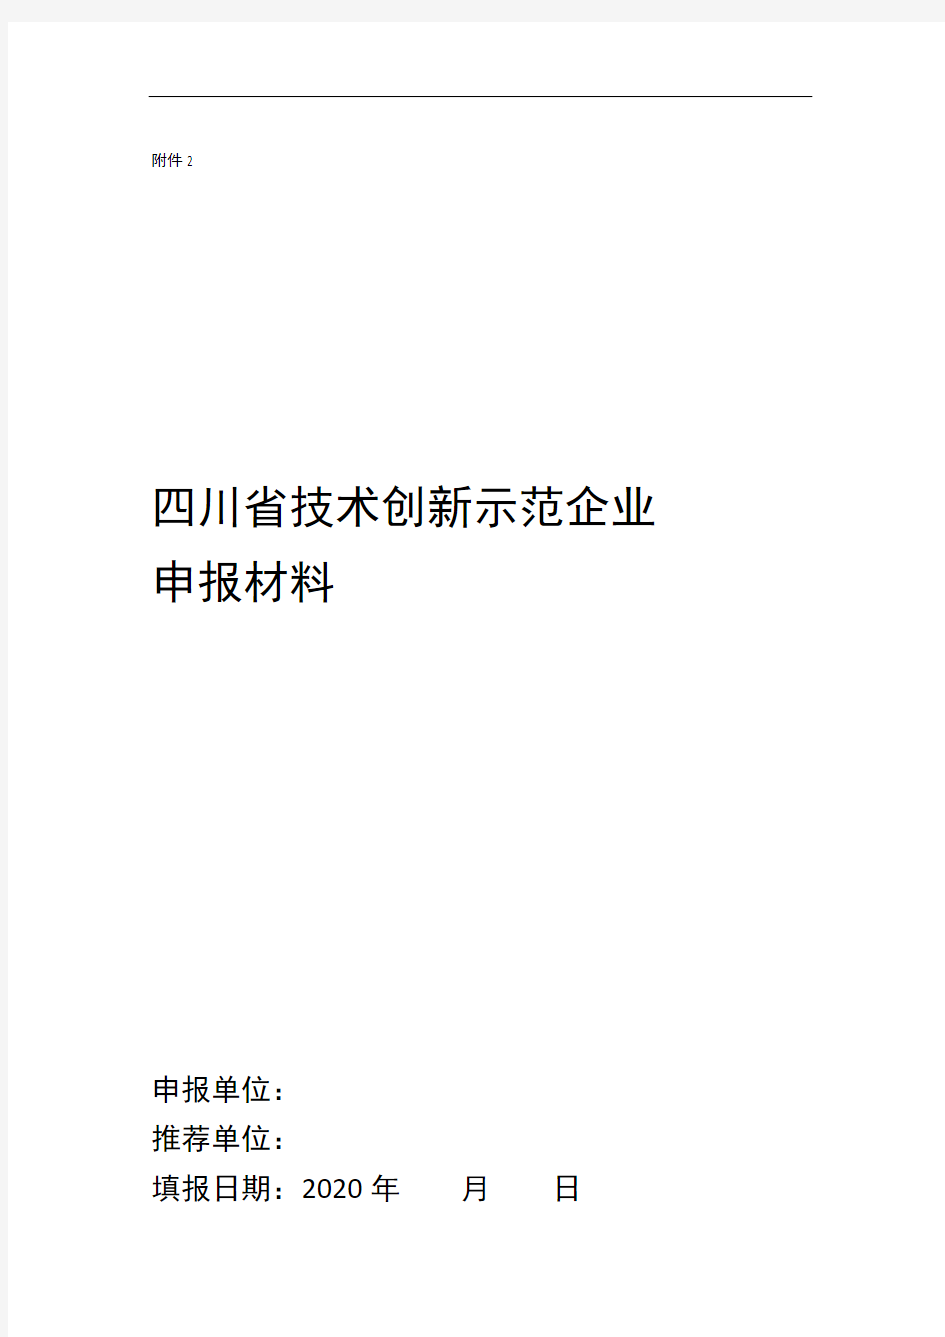 四川省技术创新示范企业申报材料